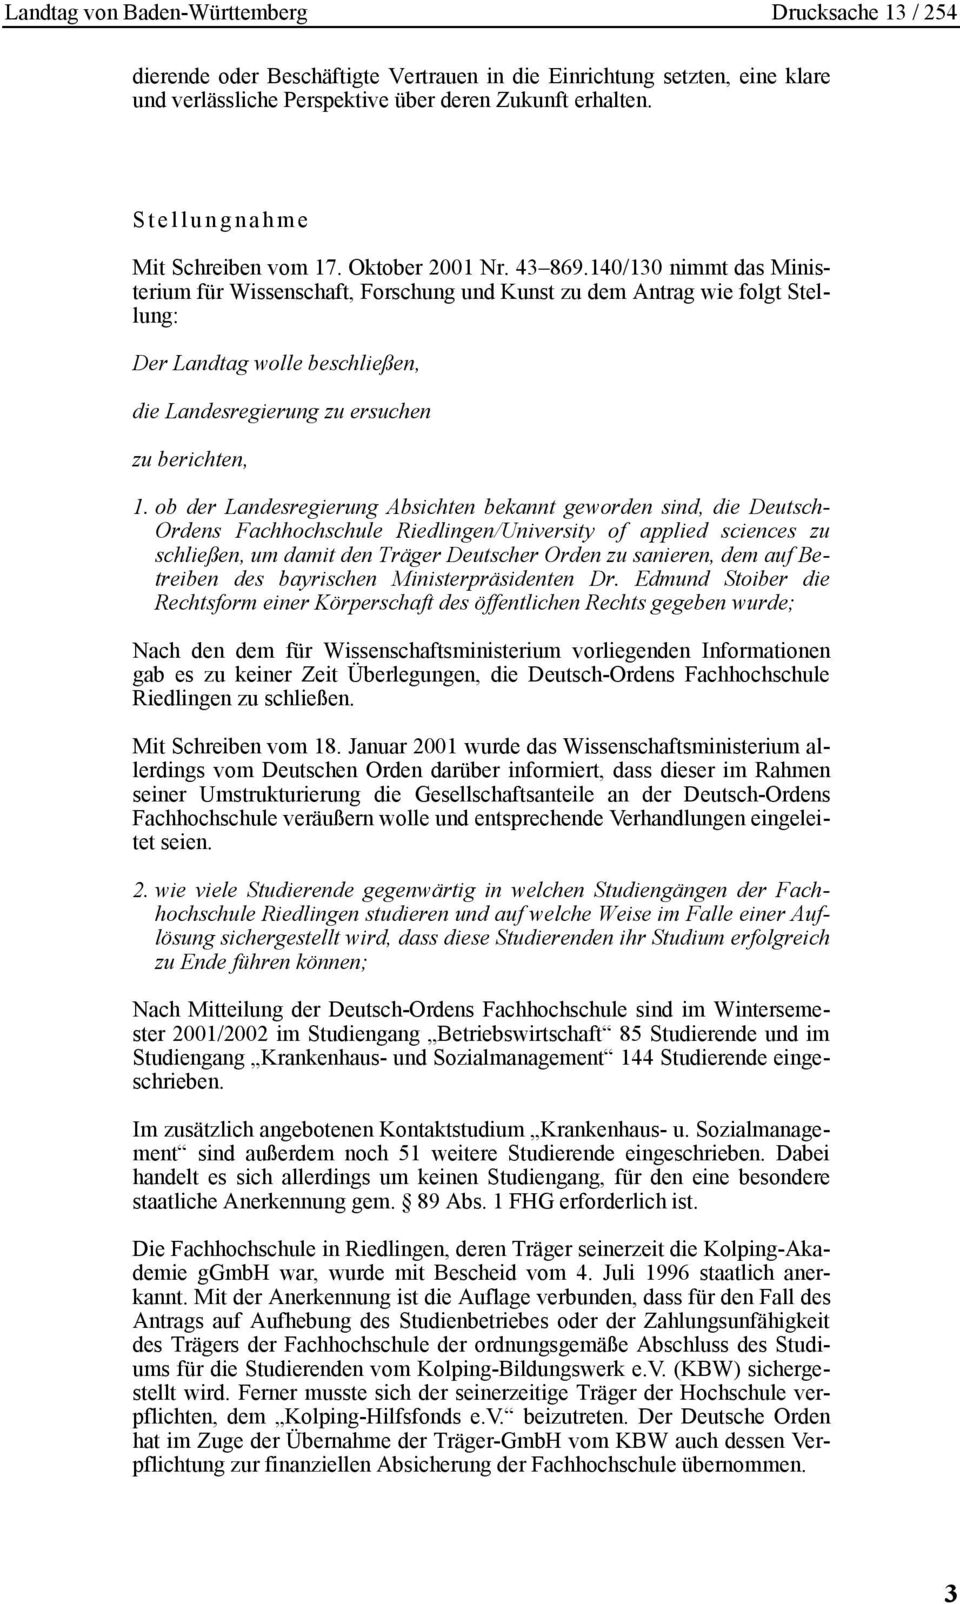 ob der Landesregierung Absichten bekannt geworden sind, die Deutsch- Ordens Fachhochschule Riedlingen/University of applied sciences zu schließen, um damit den Träger Deutscher Orden zu sanieren, dem